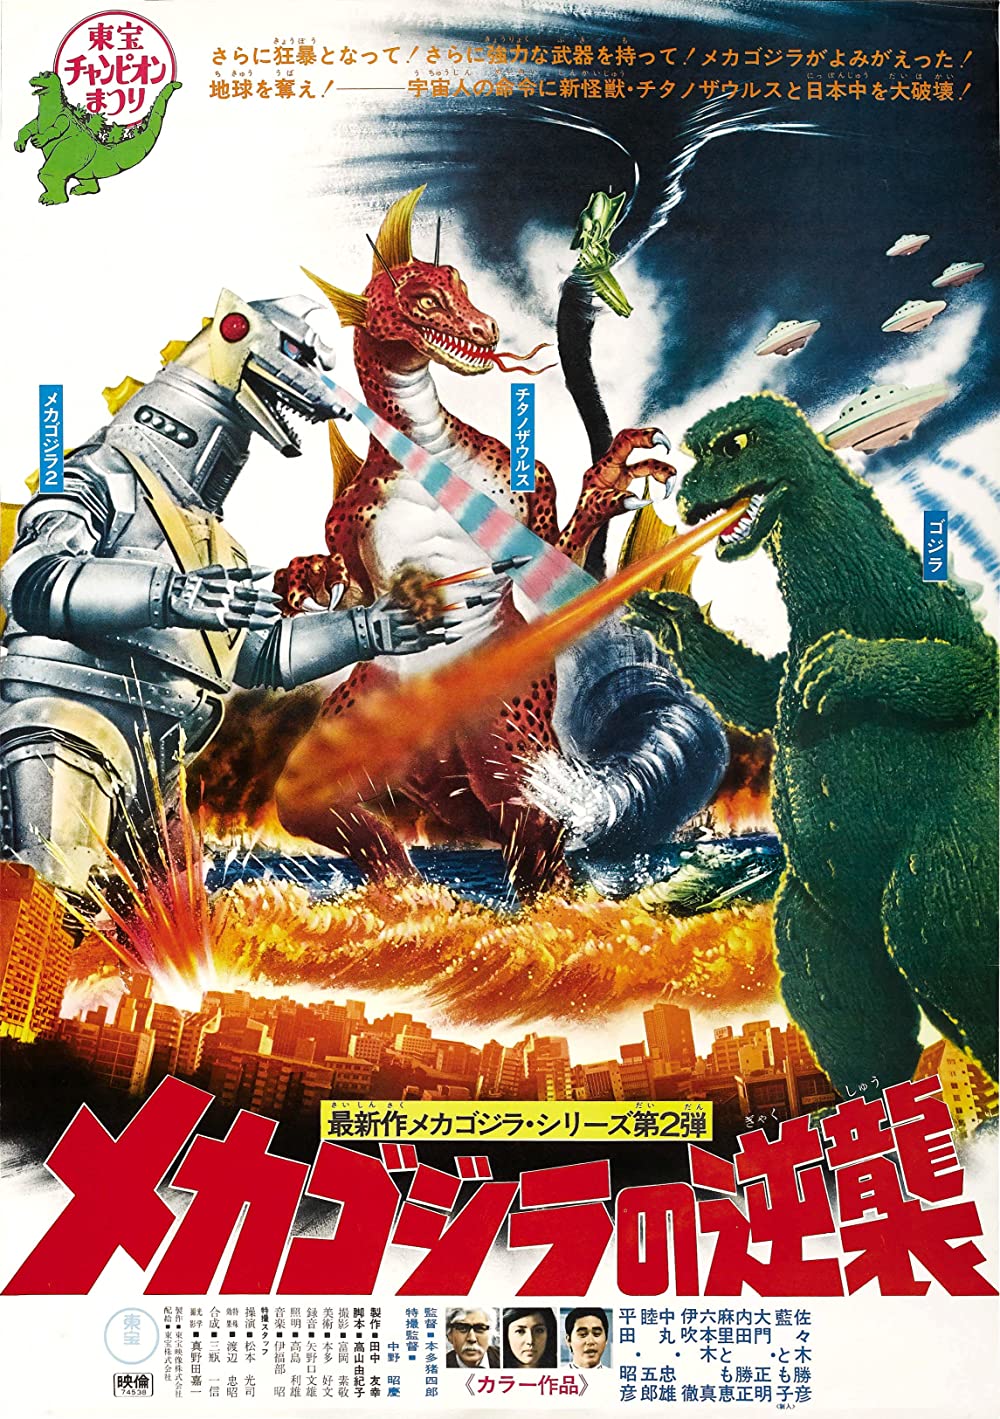 Filmbeschreibung zu Die Brut des Teufels: Konga, Godzilla, King Kong